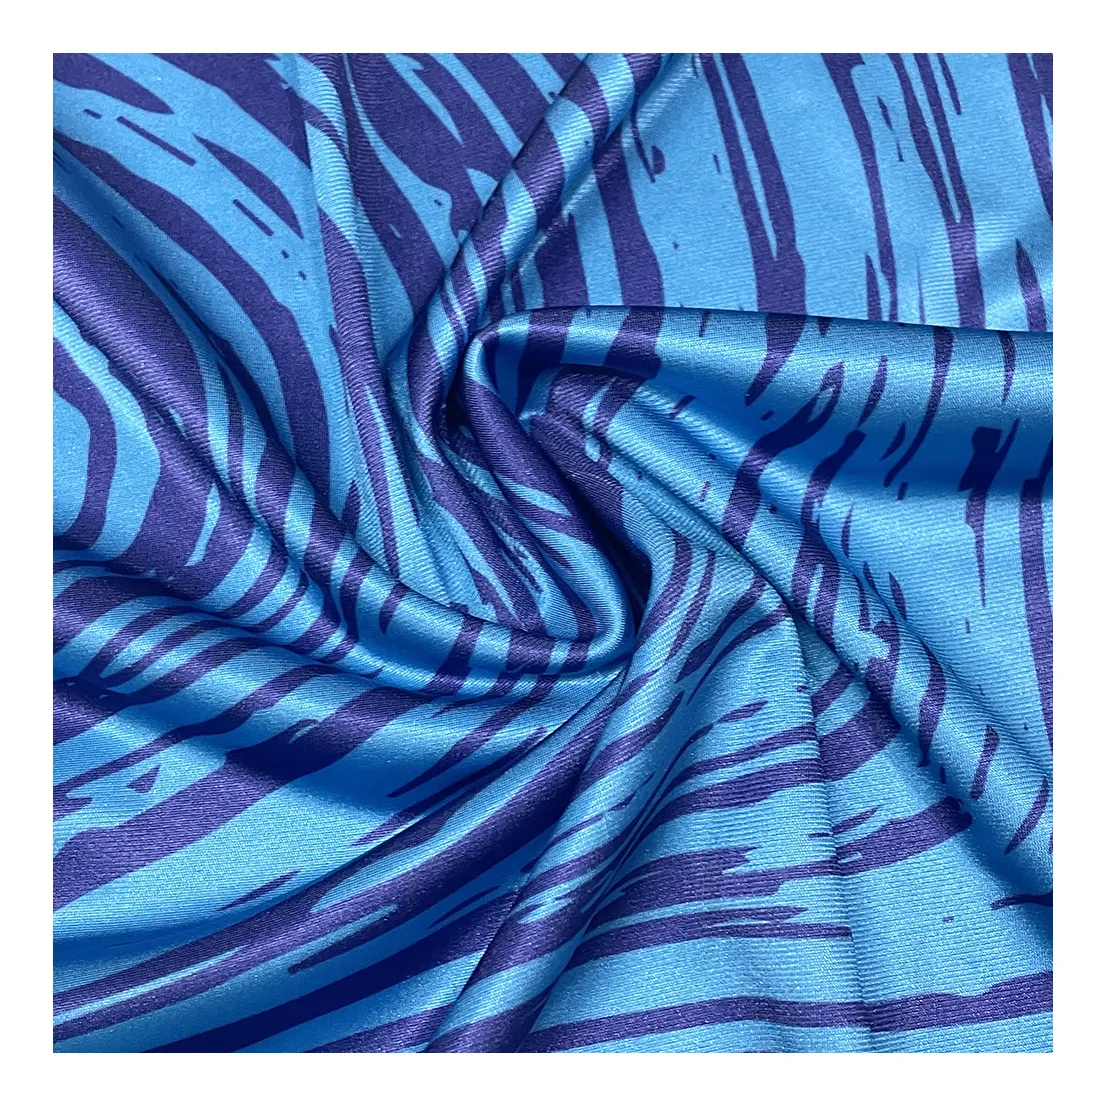 High stretch Polyester geometry digital Printed 4-way elastic spandex yoga fabric